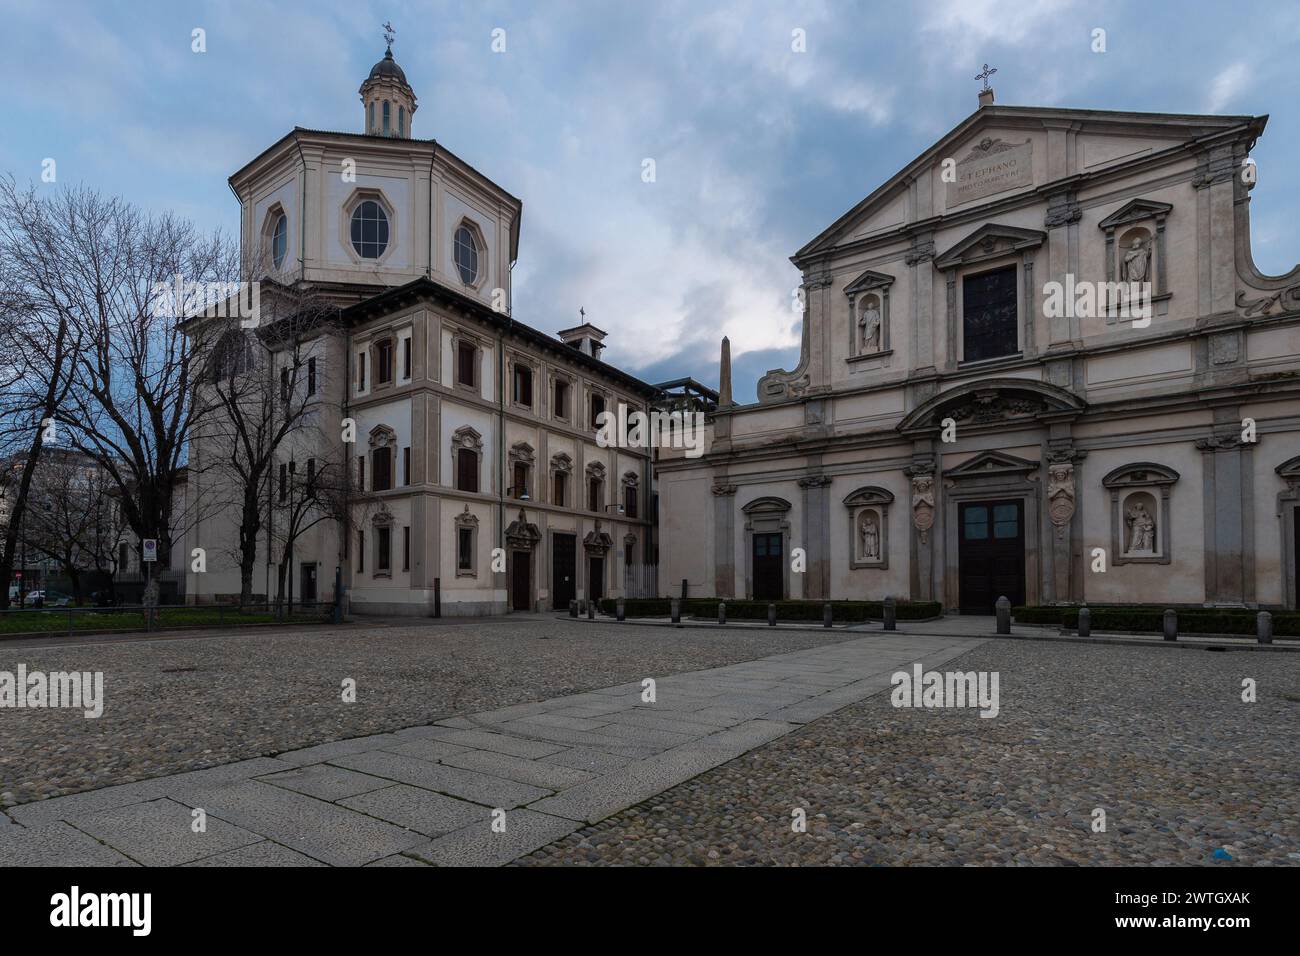 Die Basilica di Santo Stefano Maggiore ist eine Kirche in Mailand. Sie wurde im 5. Jahrhundert gegründet. Ursprünglich beiden Heiligen Zechariah an gewidmet Stockfoto